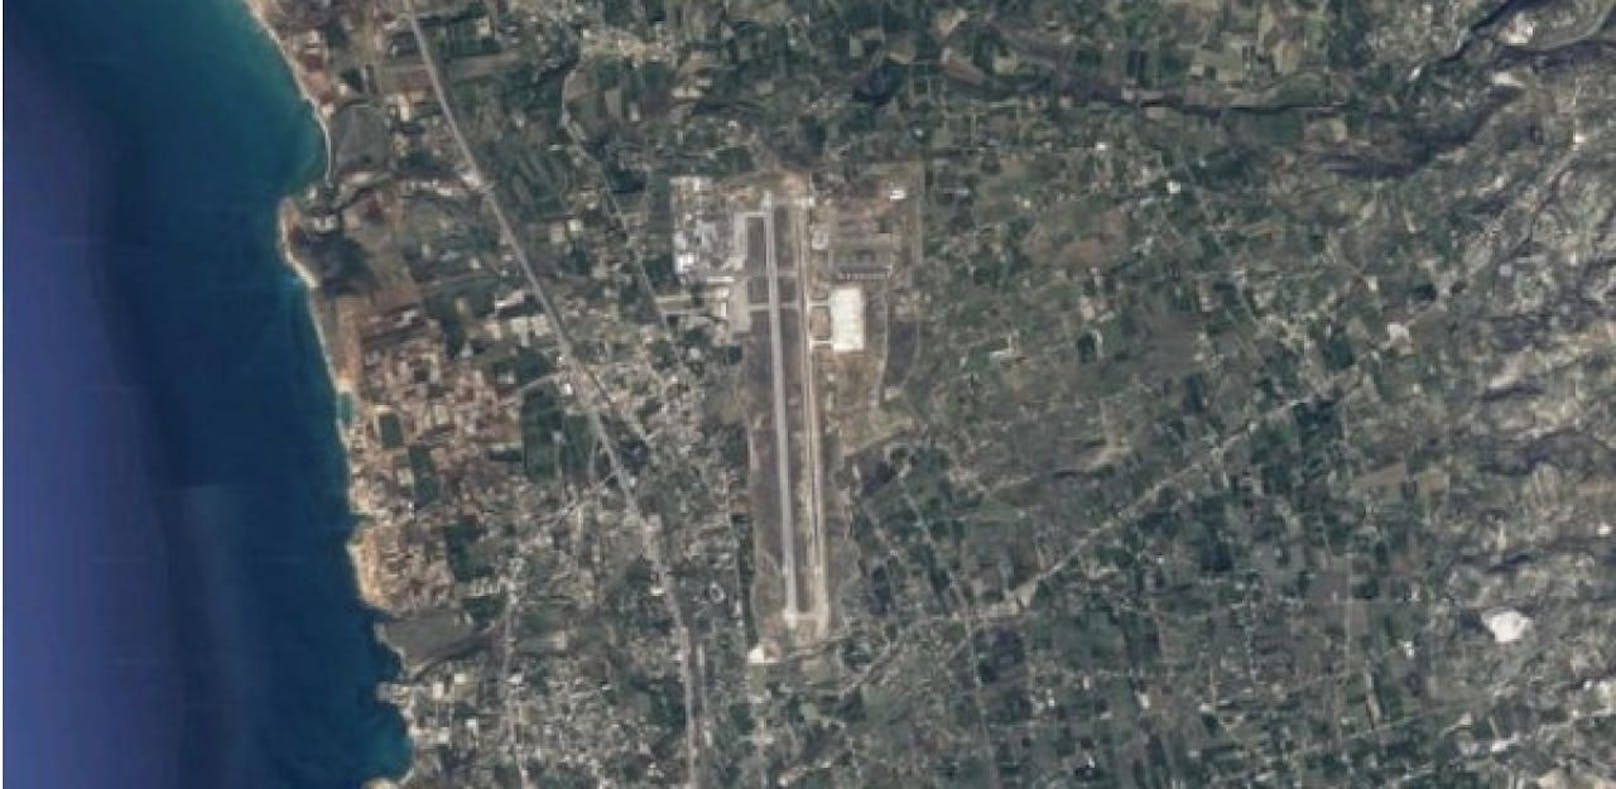 Der Vorfall ereignete sich auf dem Militärflugplatz Hmeimim. (Bild: Google Maps)